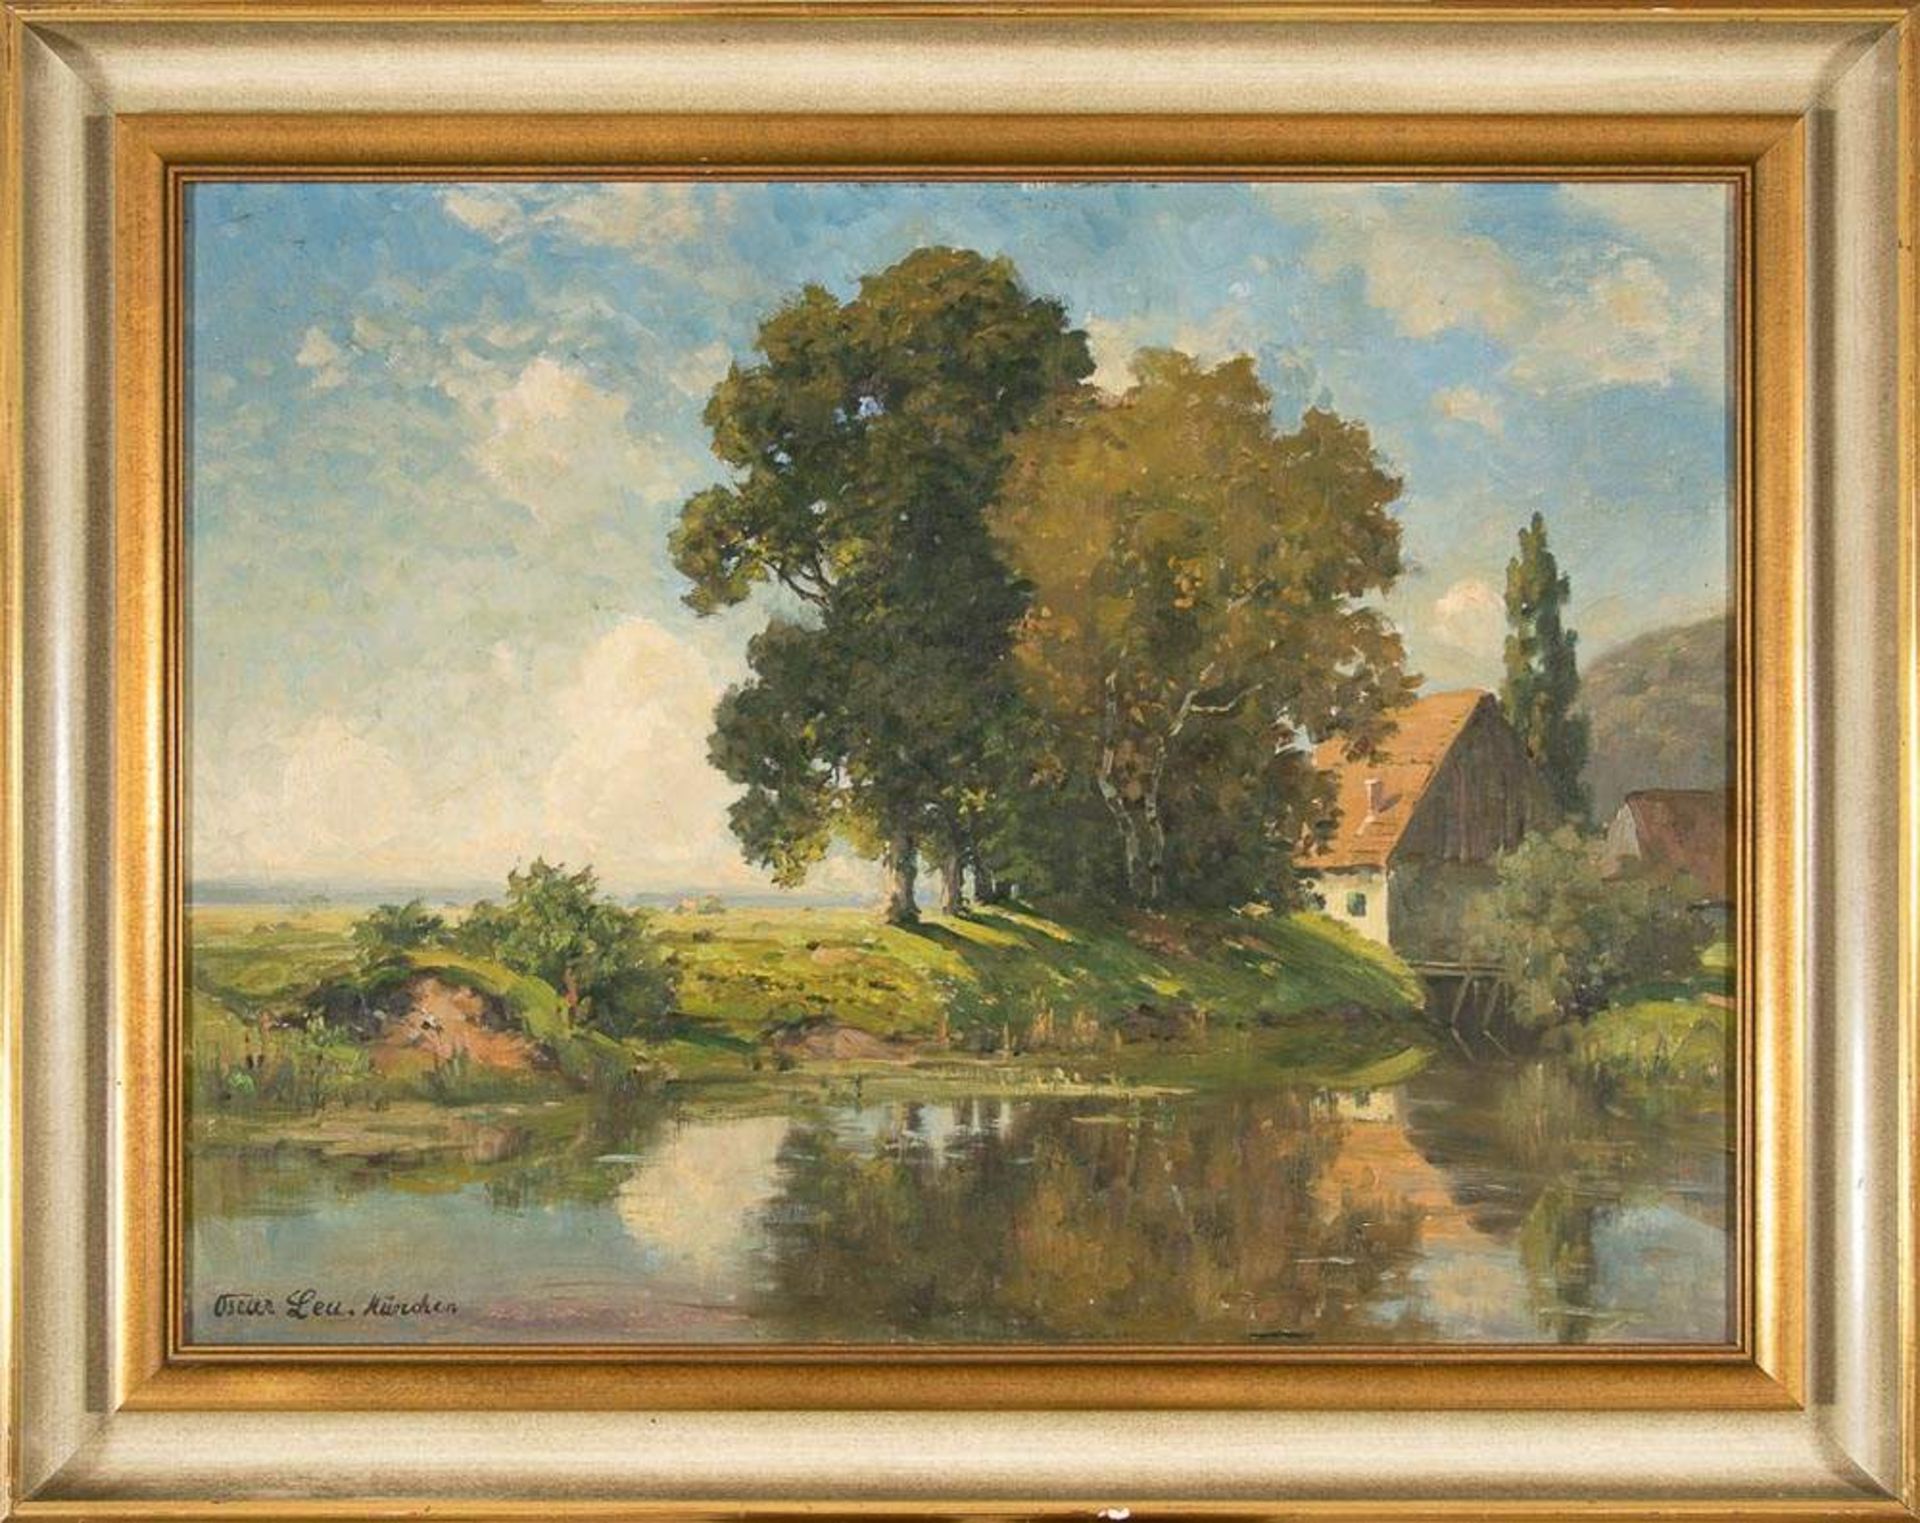 "Flusslandschaft mit Hofstelle". Gemälde, Öl auf Leinwand, signiert "OSCAR LEU, München", (